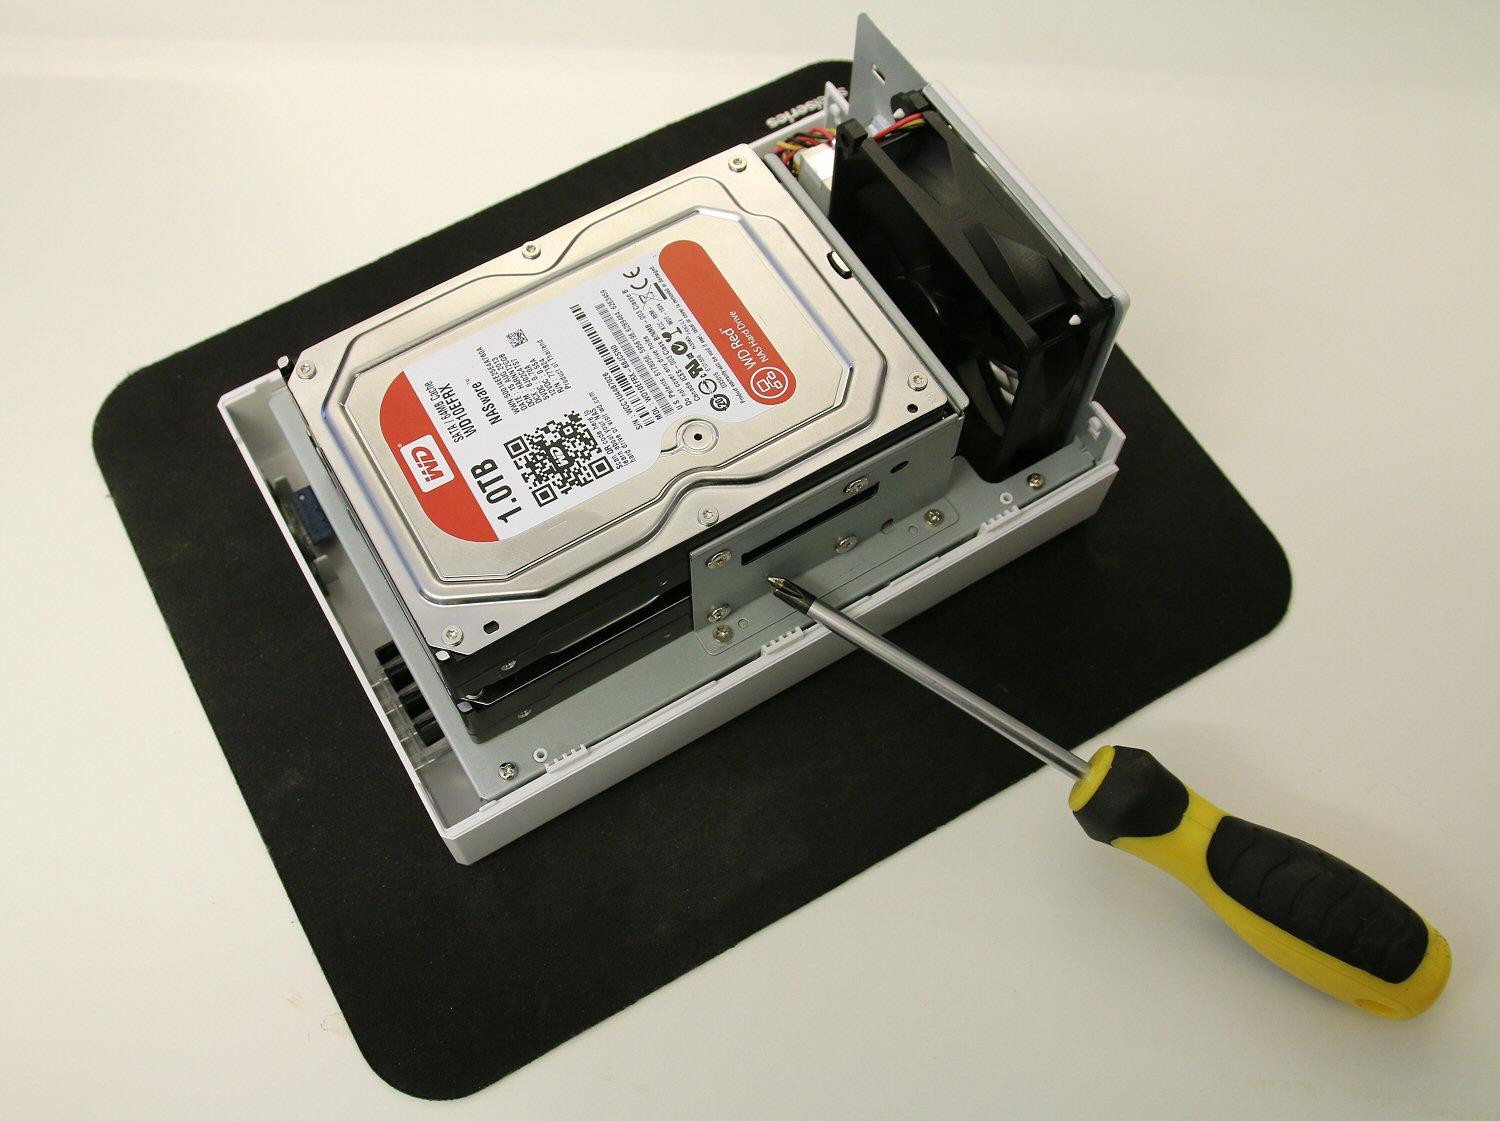 For å bytte harddisker må hele NAS-en åpnes, men det er en enkel operasjon.Foto: Vegar Jansen, Hardware.no